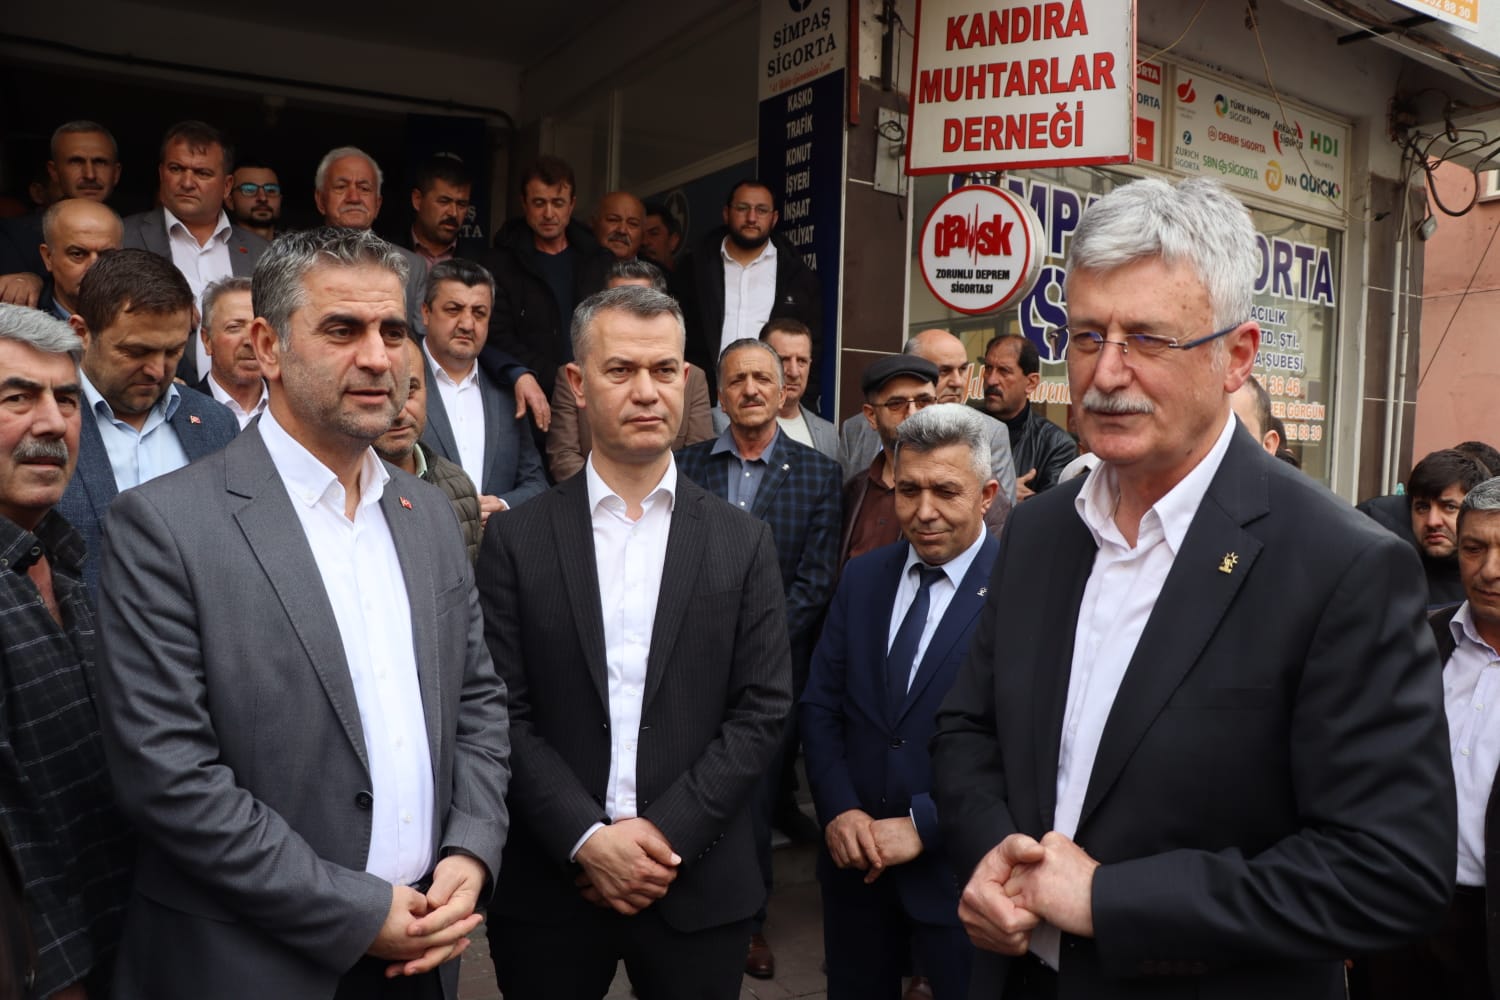 AK Parti Kocaeli Milletvekili Adayı Mehmet Ellibeş,  Kandıra’da 70 muhtarla bir araya geldi. Ellibeş,